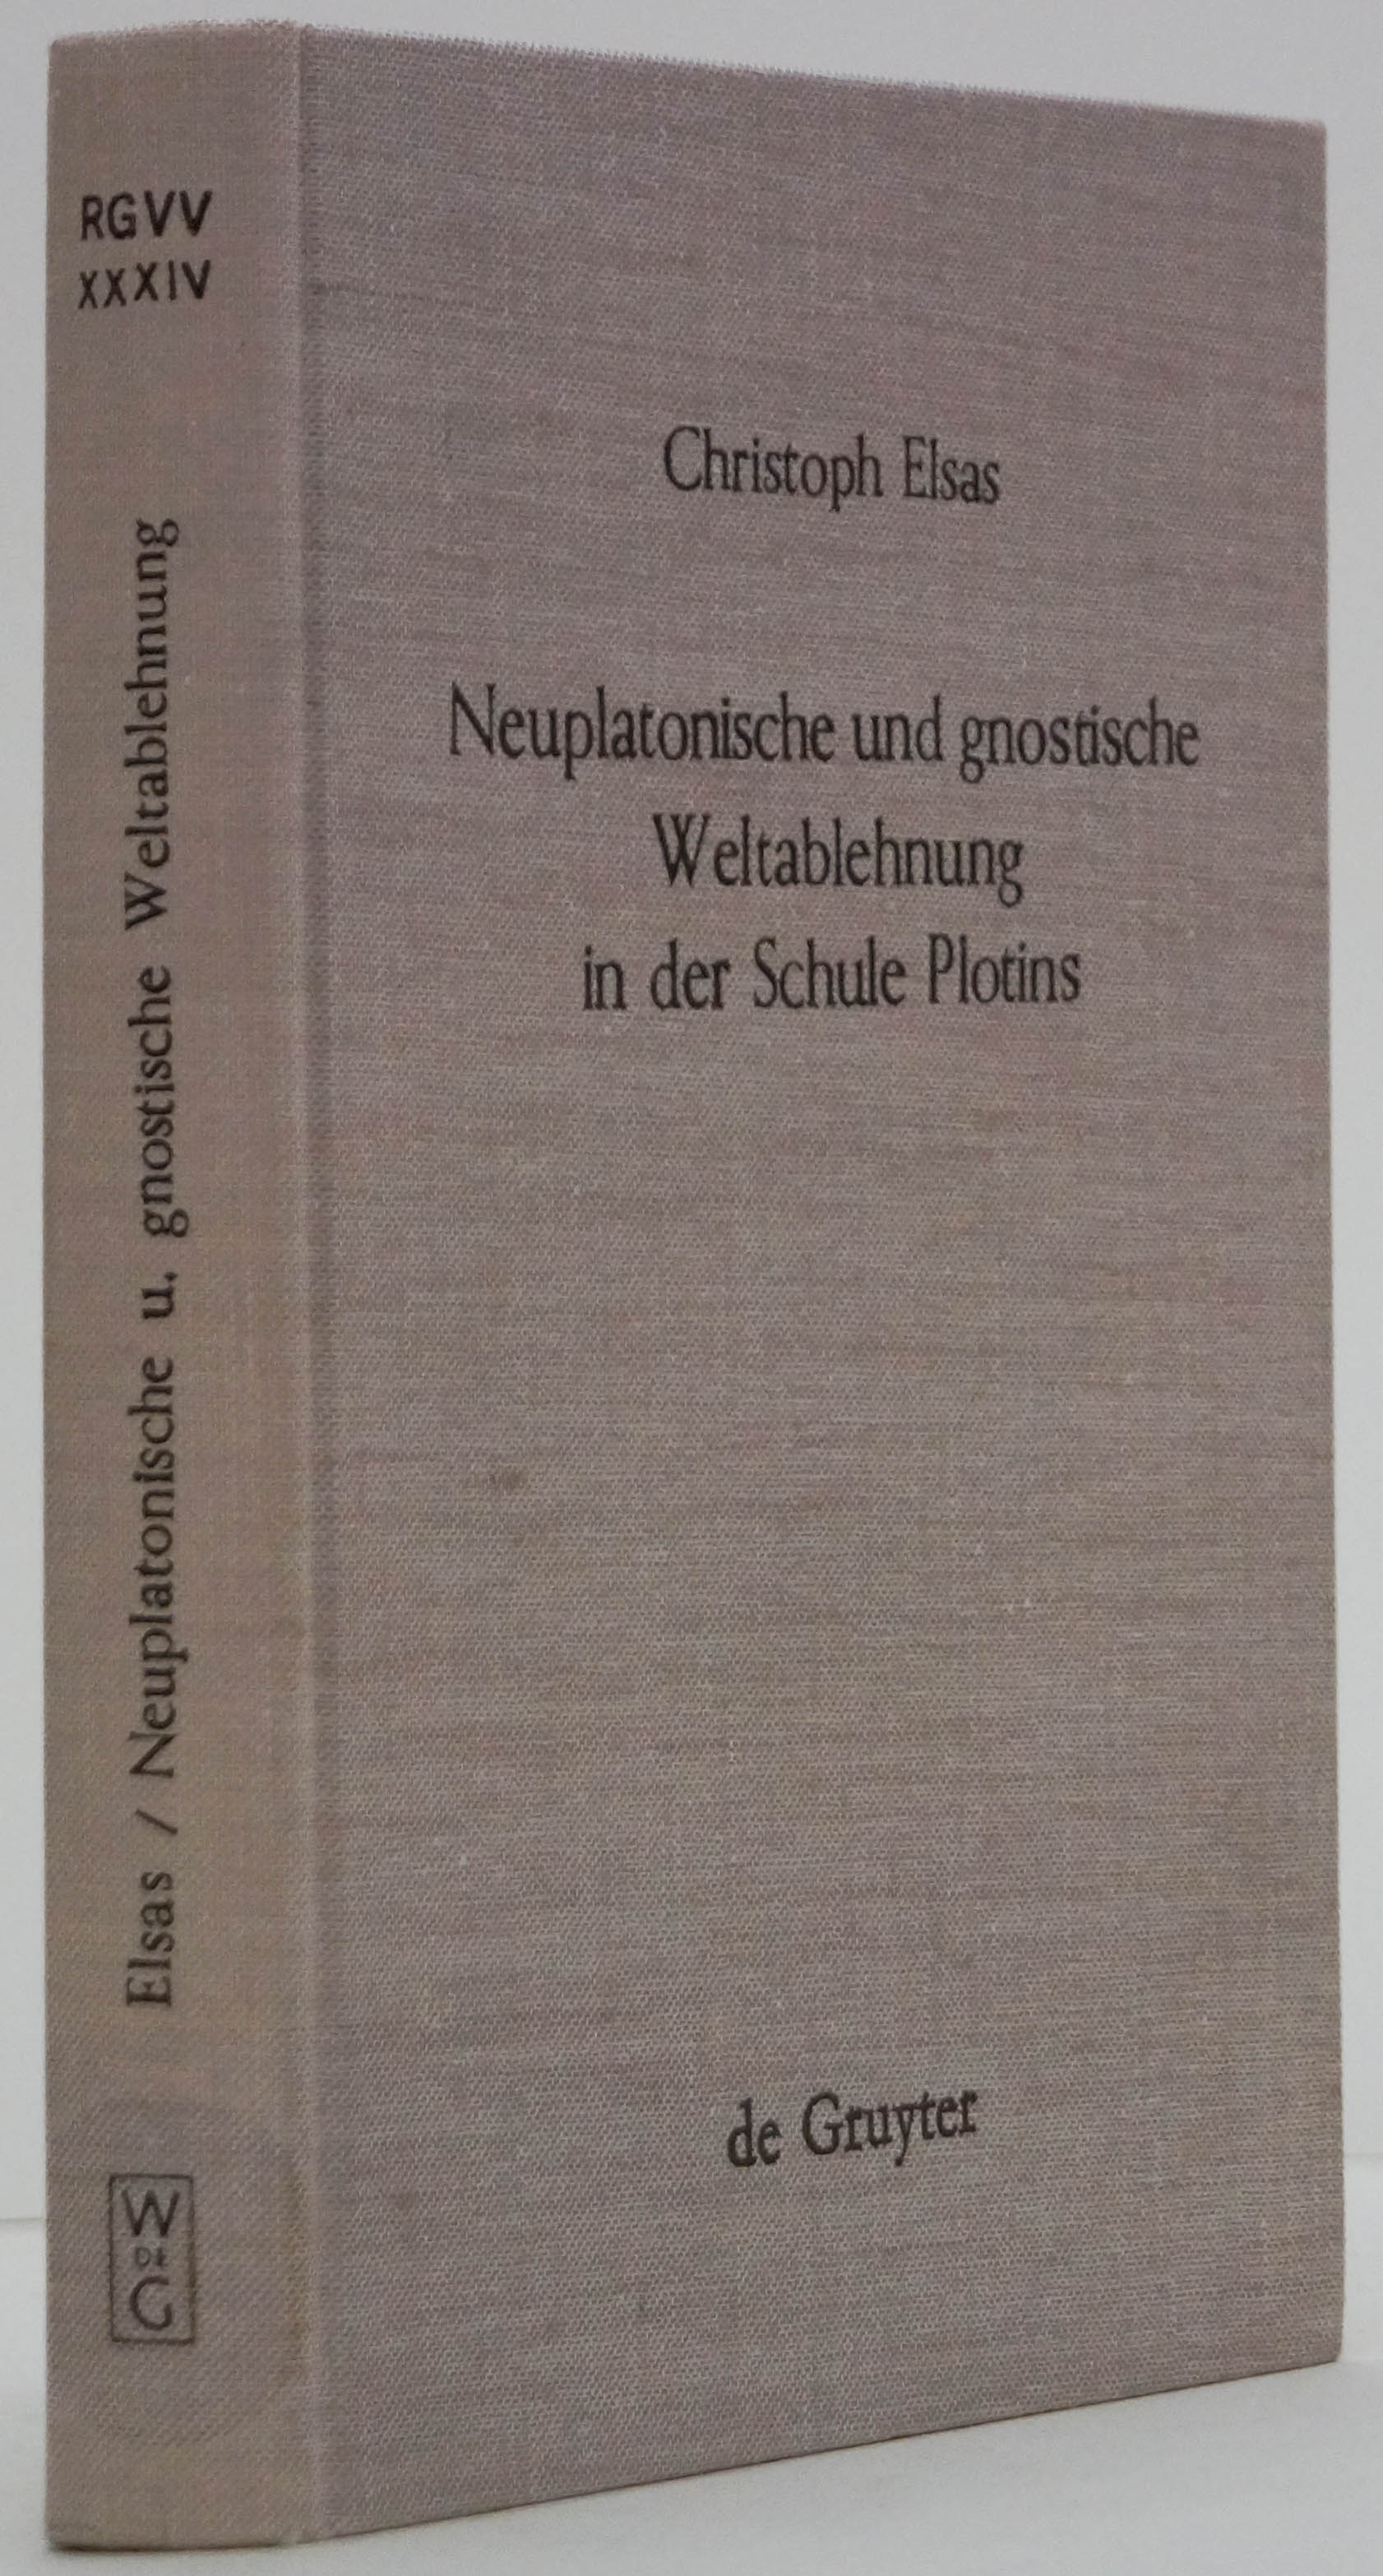 ELSAS, C. - Neuplatonische und gnostische Weltablehnung in der Schule Plotins.